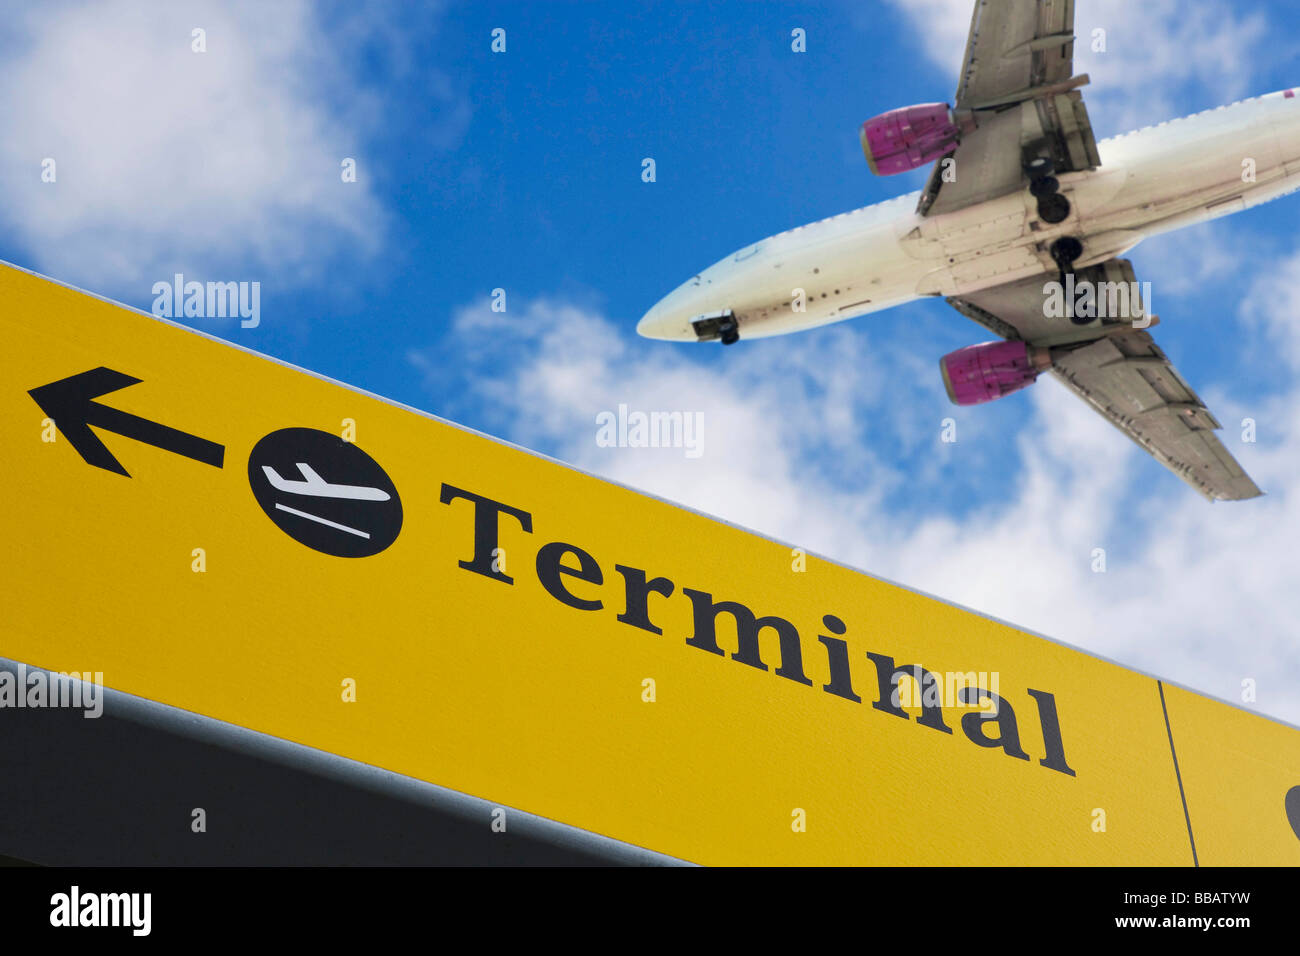 Avion survolant 'terminal' sign Banque D'Images